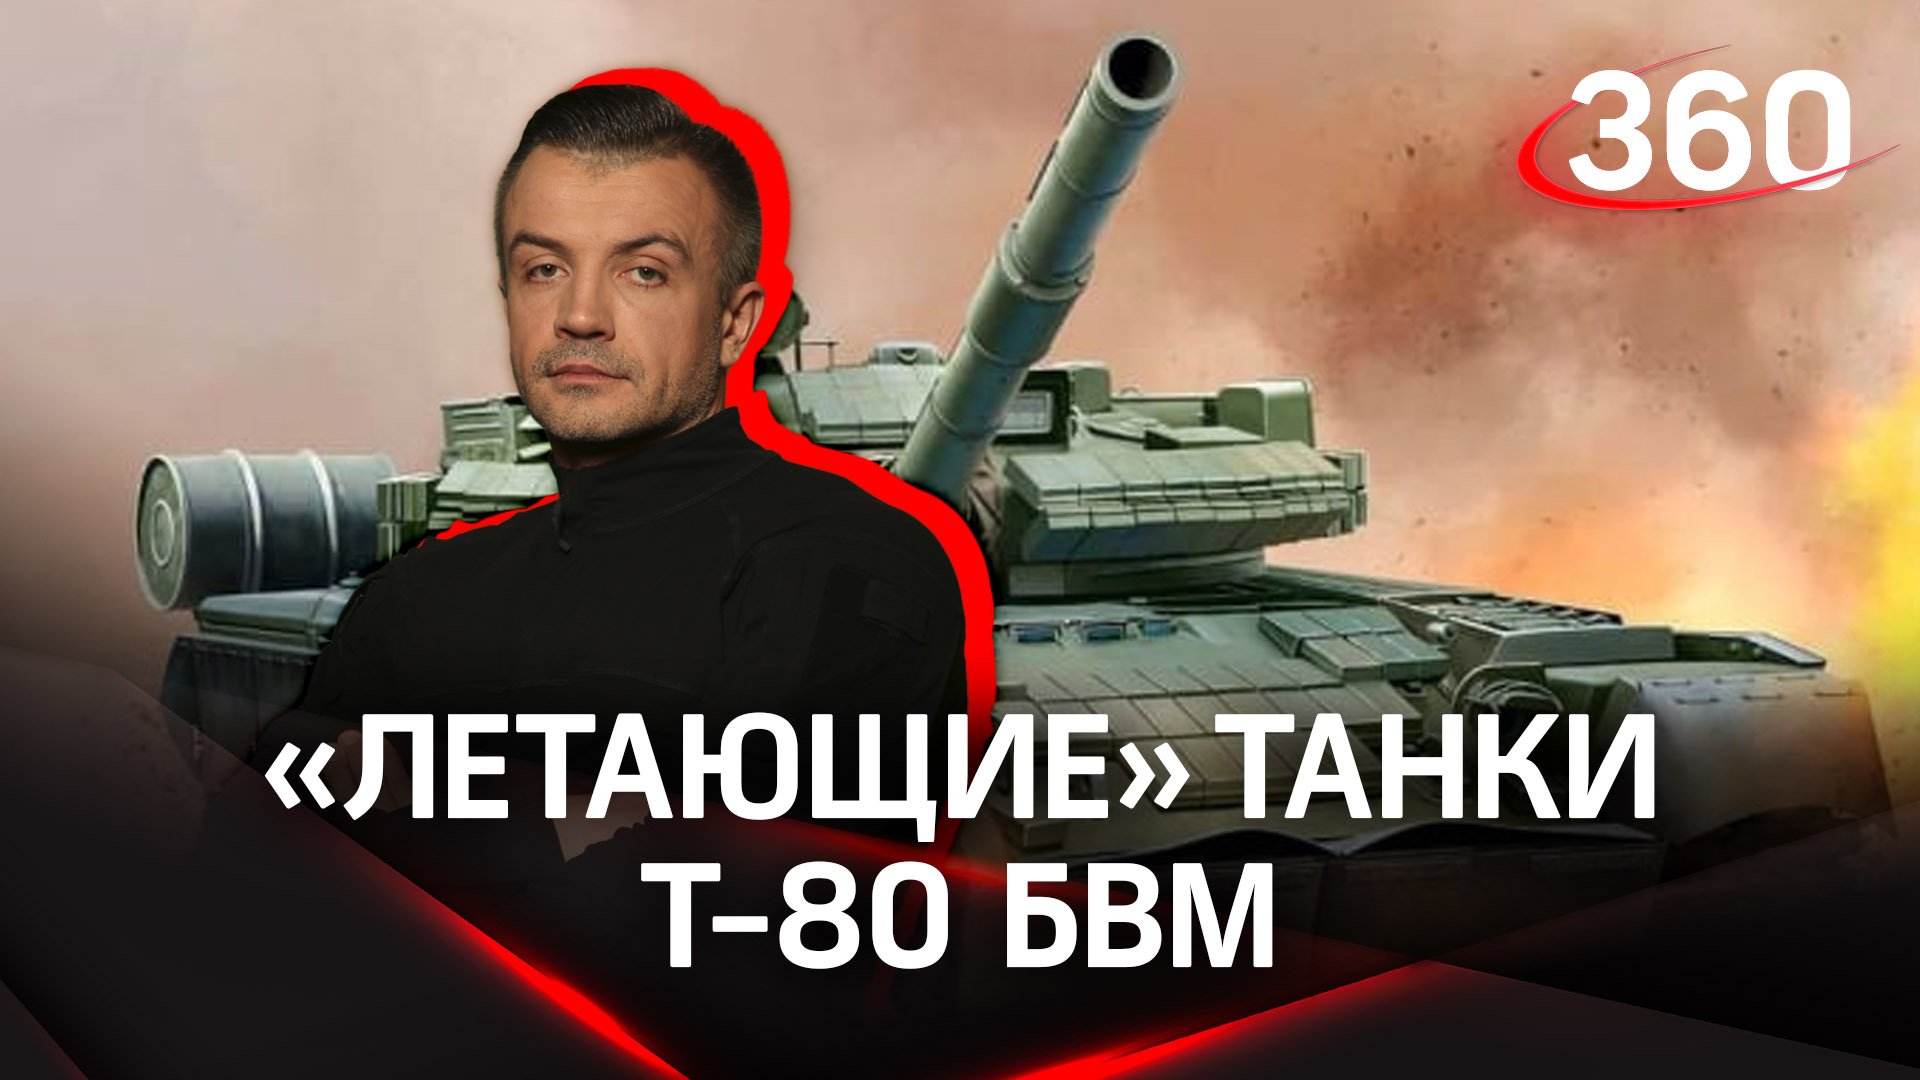 Новейшие Т-80 БВМ: почему их называют «летающими» или «реактивными» танками? Антон Шестаков